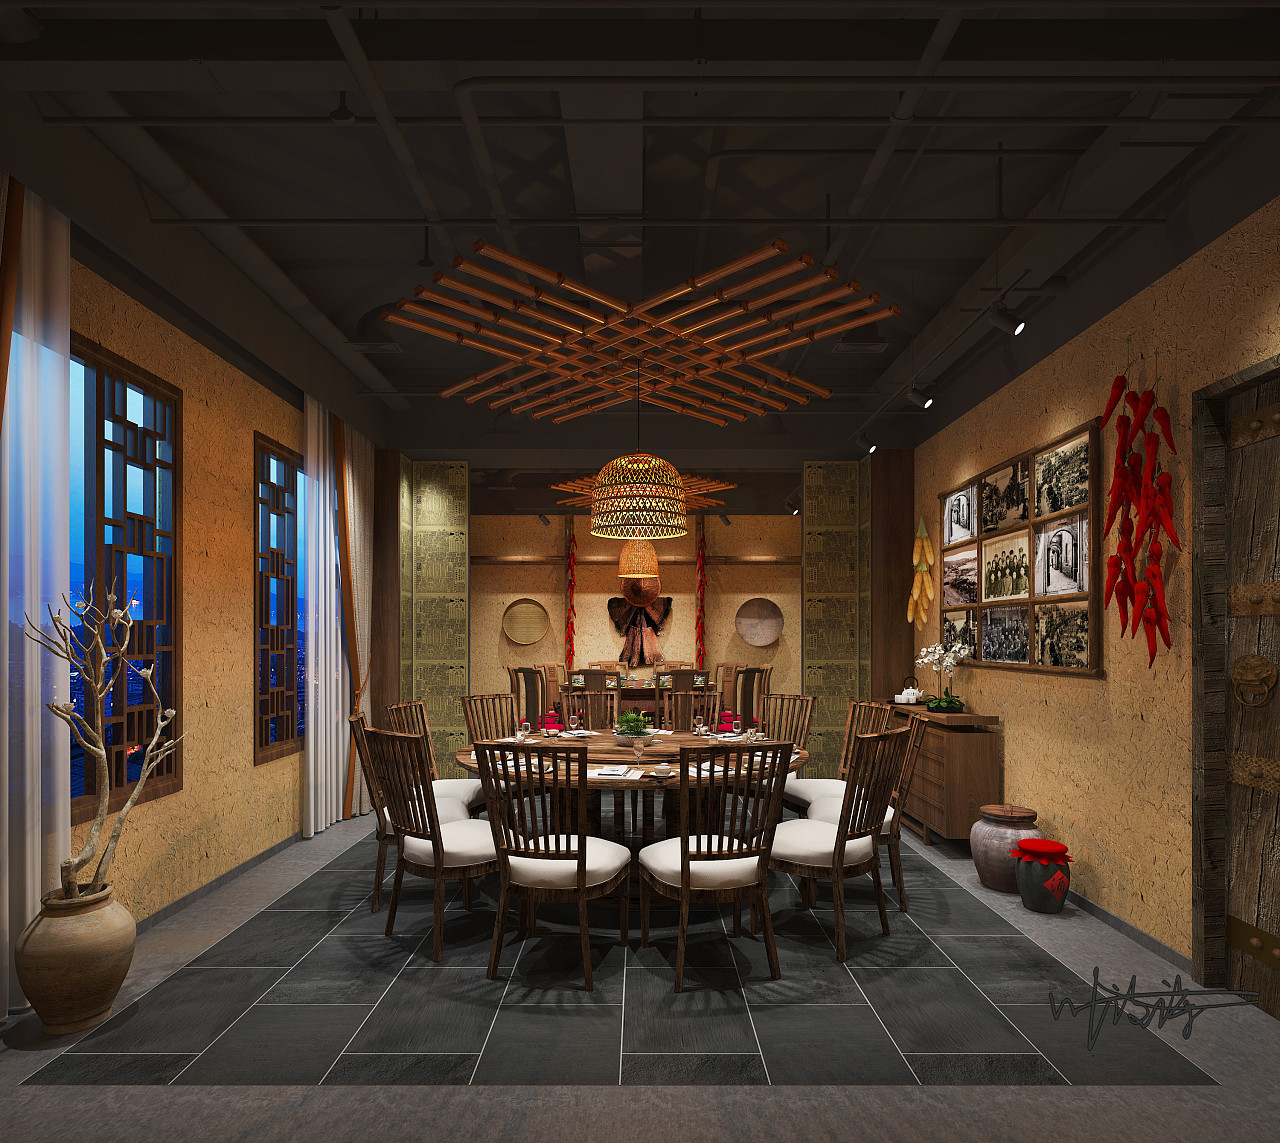 新中式餐厅包厢模型SU模型下载[ID:113460663]_建E室内设计网